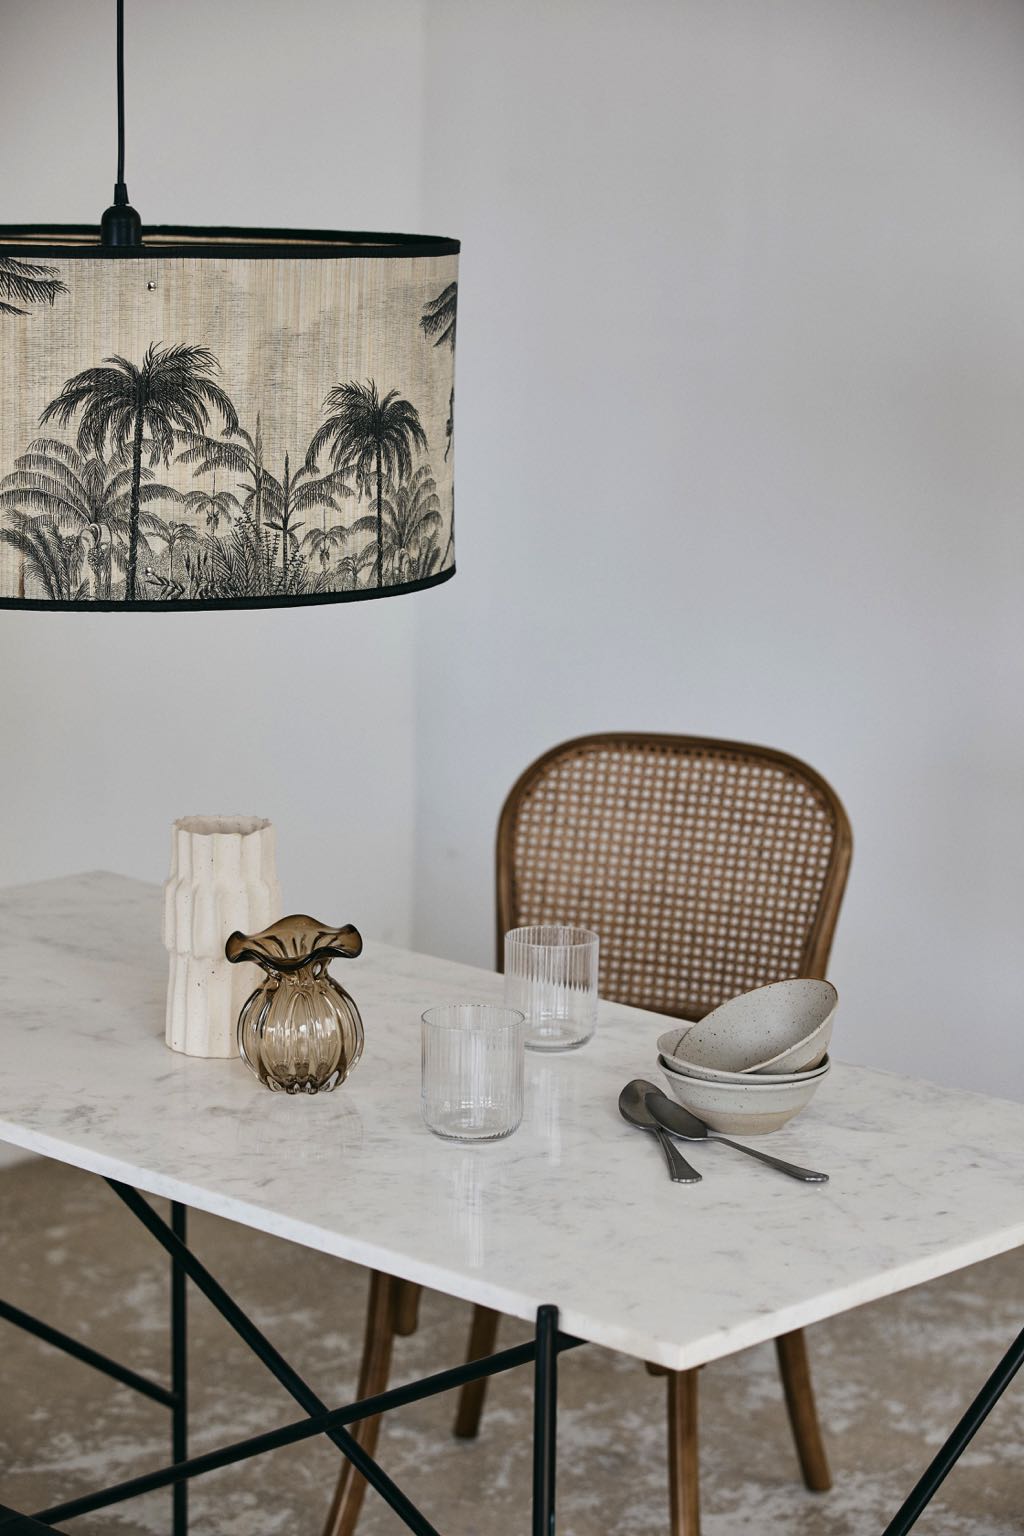 Mit der richtigen Deko wird der Tisch zum einladenden Kommunikationsmittelpunkt. Die stylische Hängeleuchte mit Dschungelmotiv ist aus bedrucktem Bambus. Von Nordal, erhältlich über Car Möbel, ca. 87 Euro.